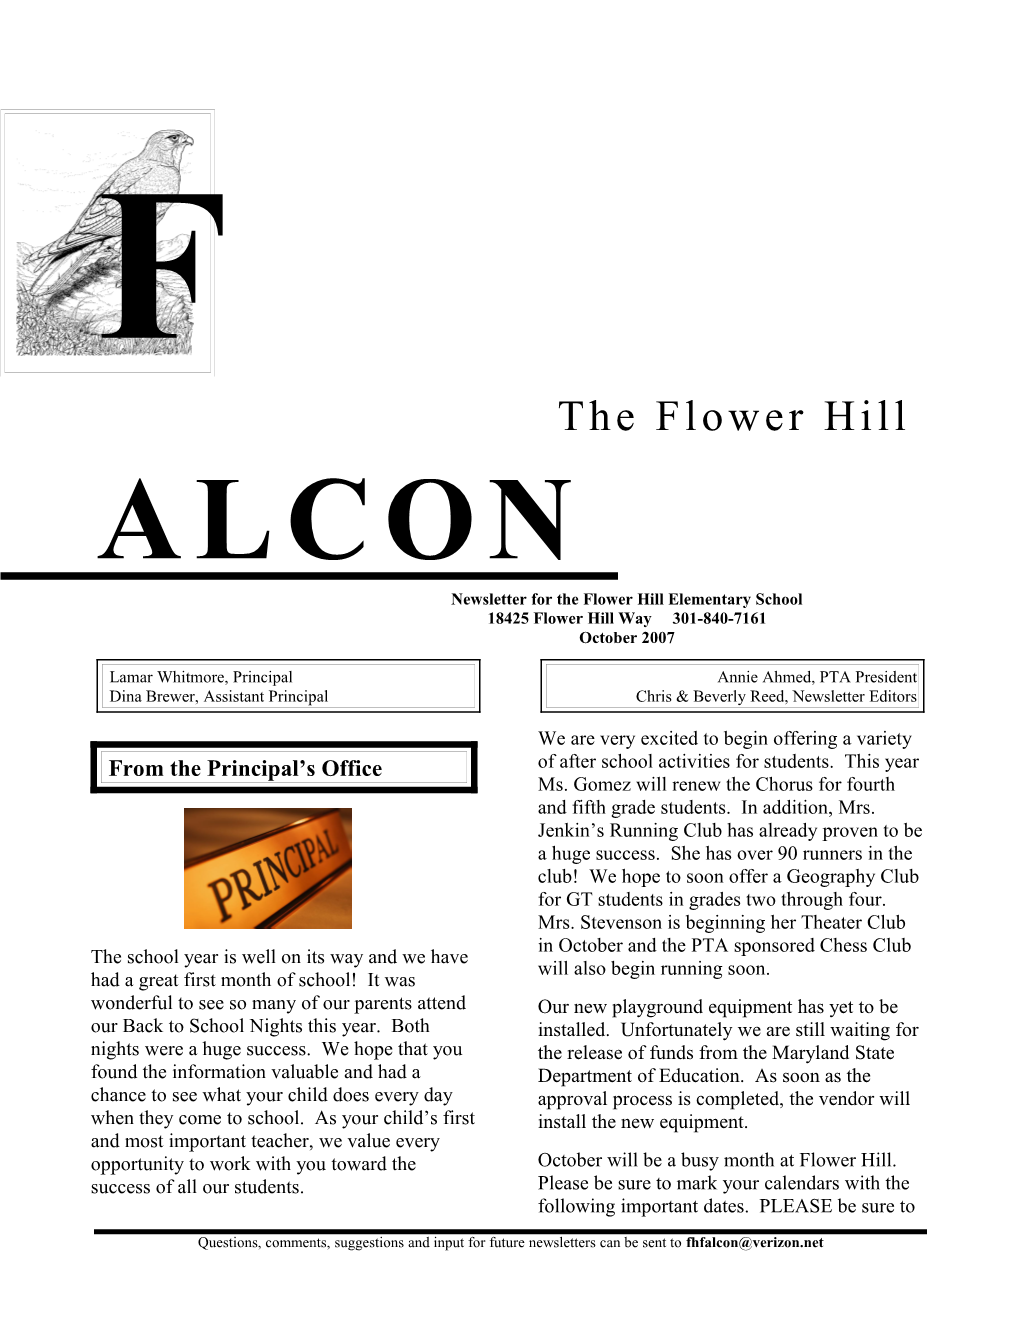 Newsletter for the Flowerhillelementary School